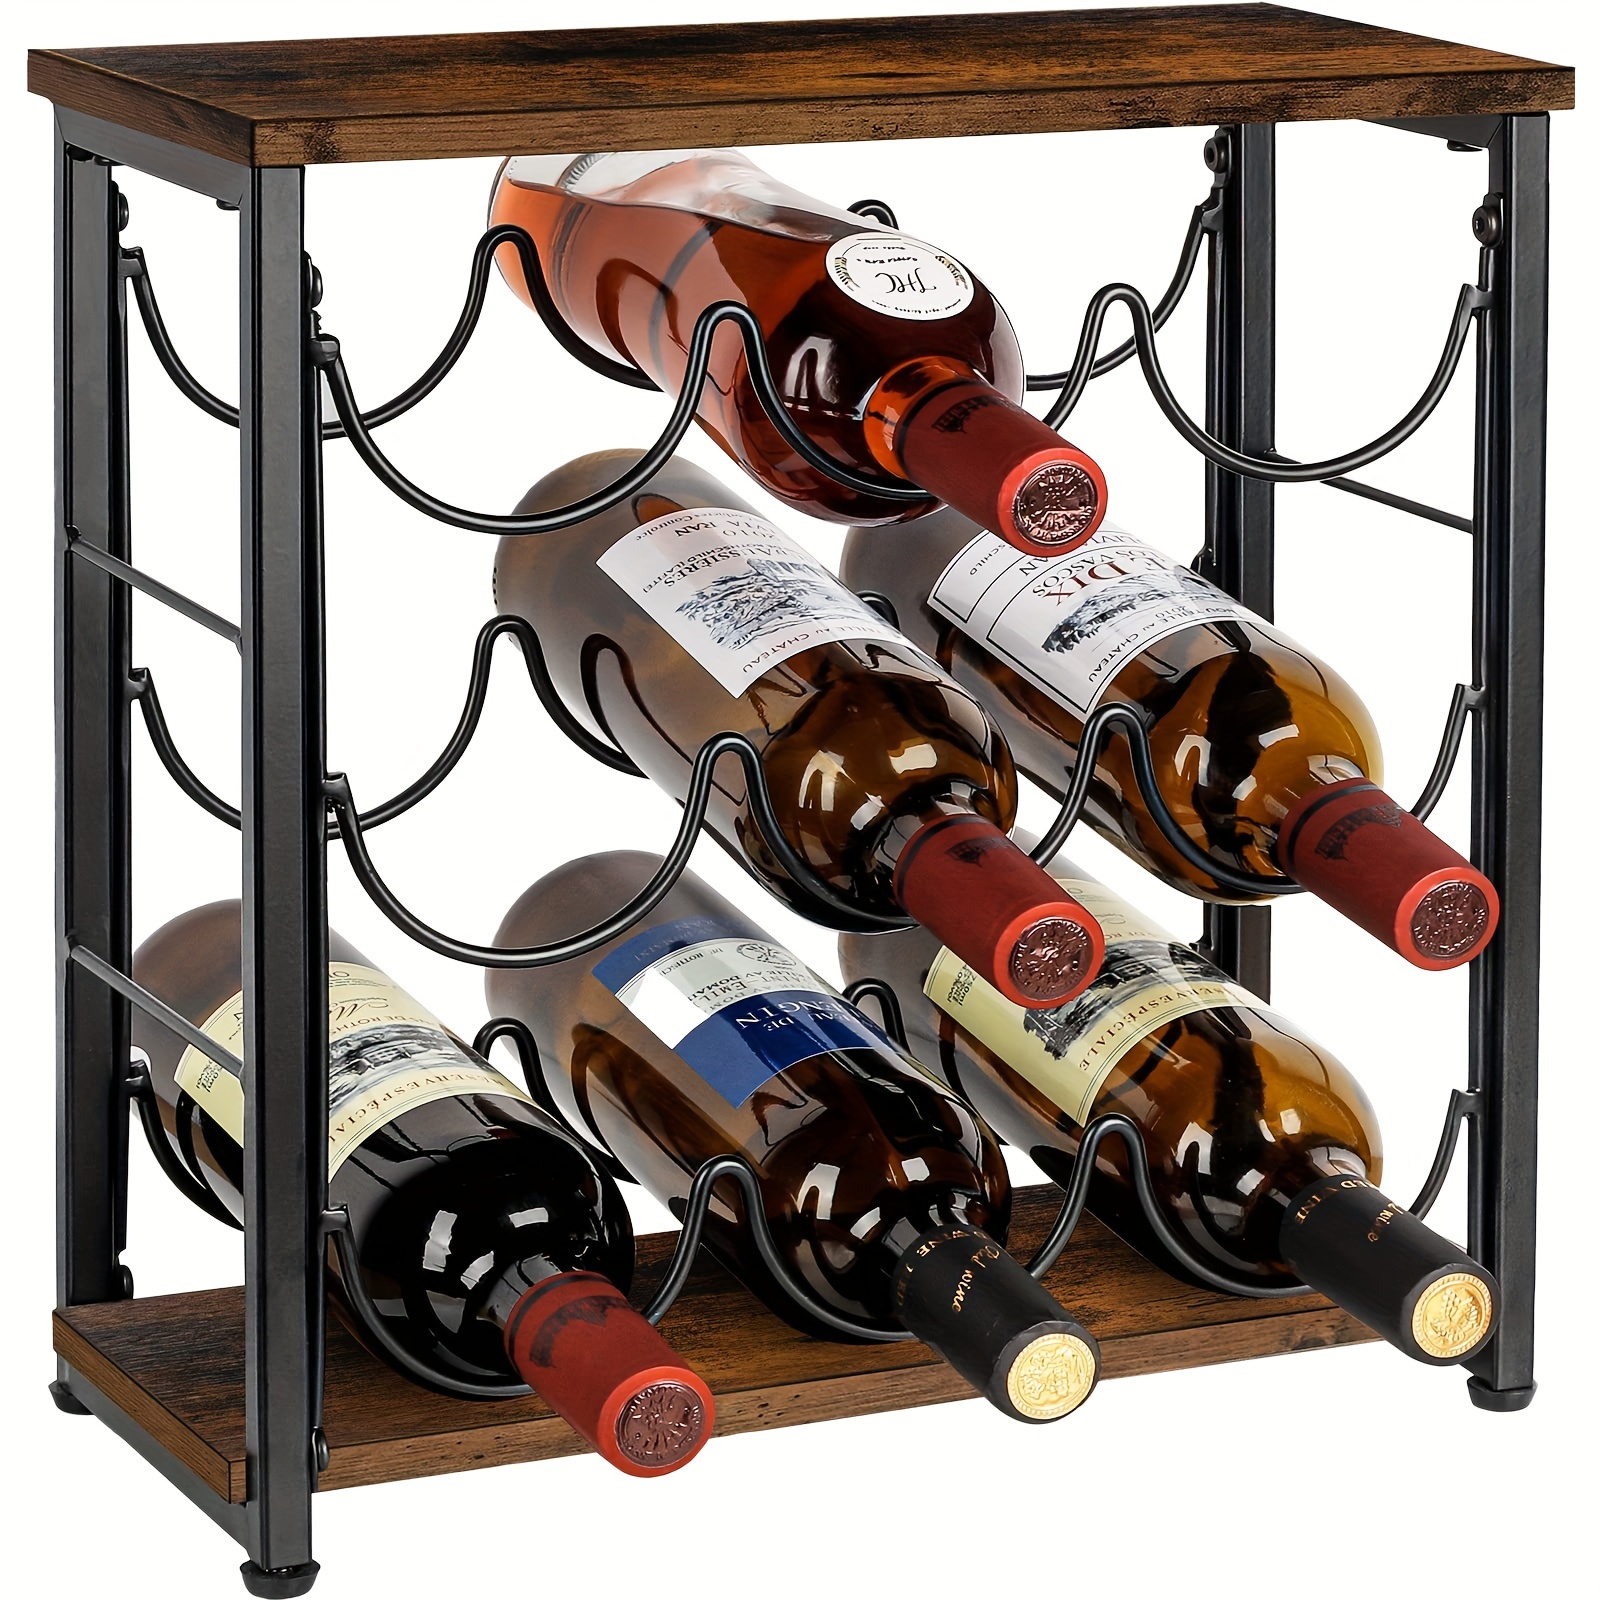 Soporte vertical para botelleras / estante para vinos rústico